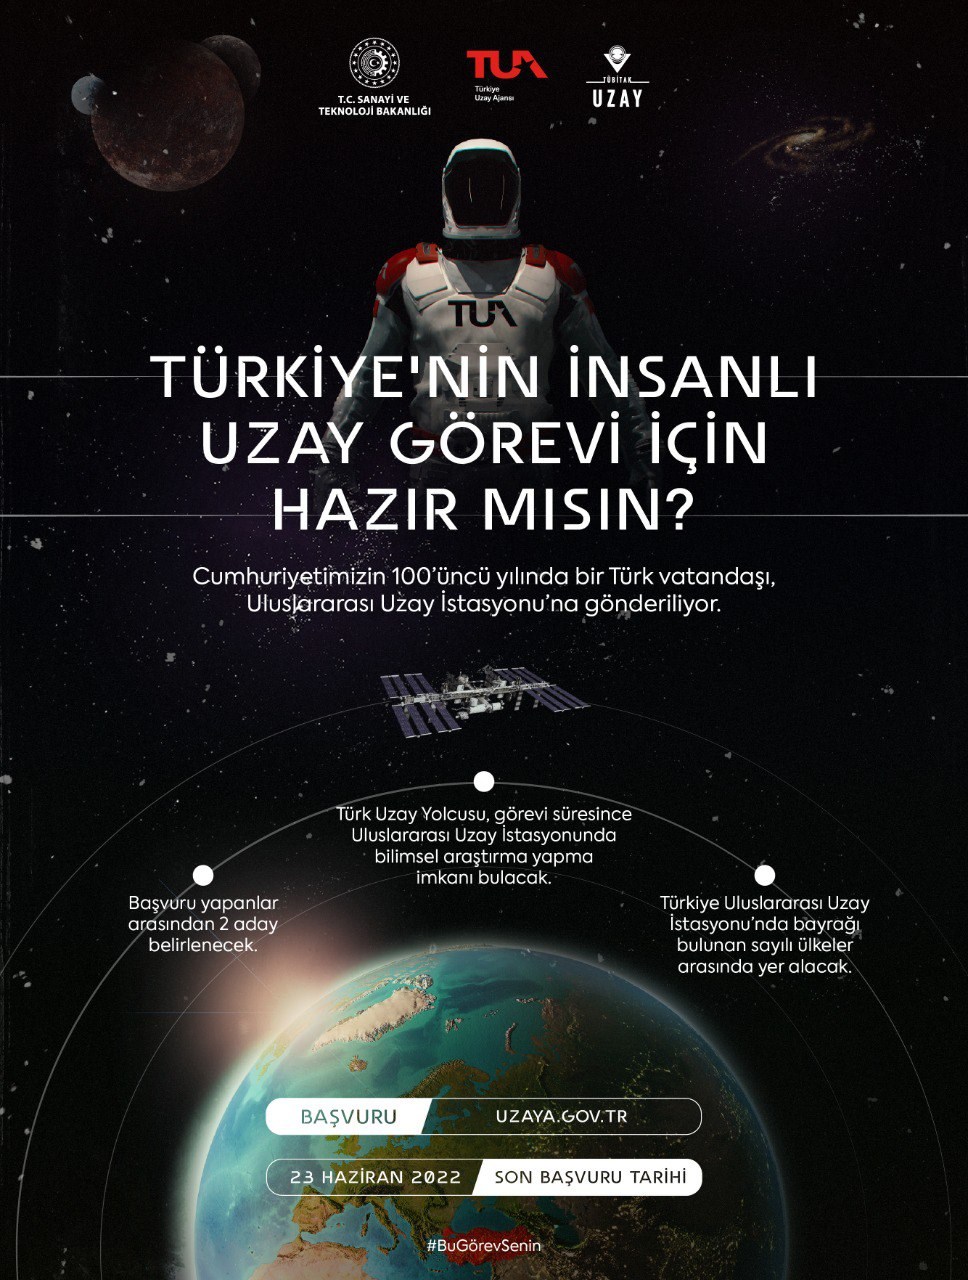 İlk Türk astronot olmak için kaç kişi başvuru yaptı?